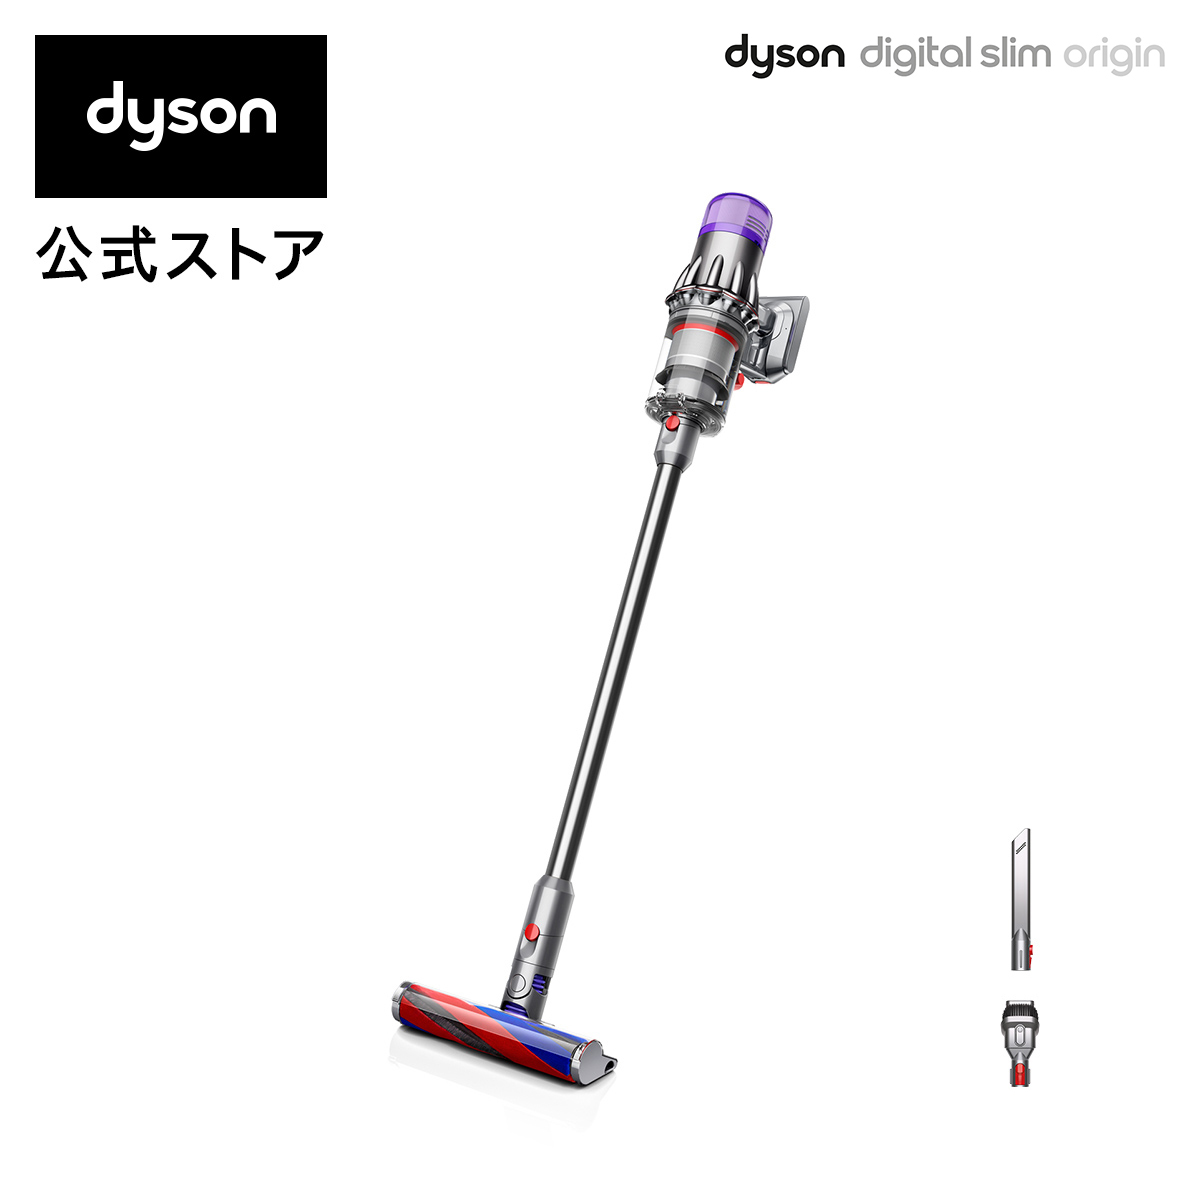 ダイソン Dyson Digital Slim Origin サイクロン式 コードレス掃除機 dyson SV18FFOR2